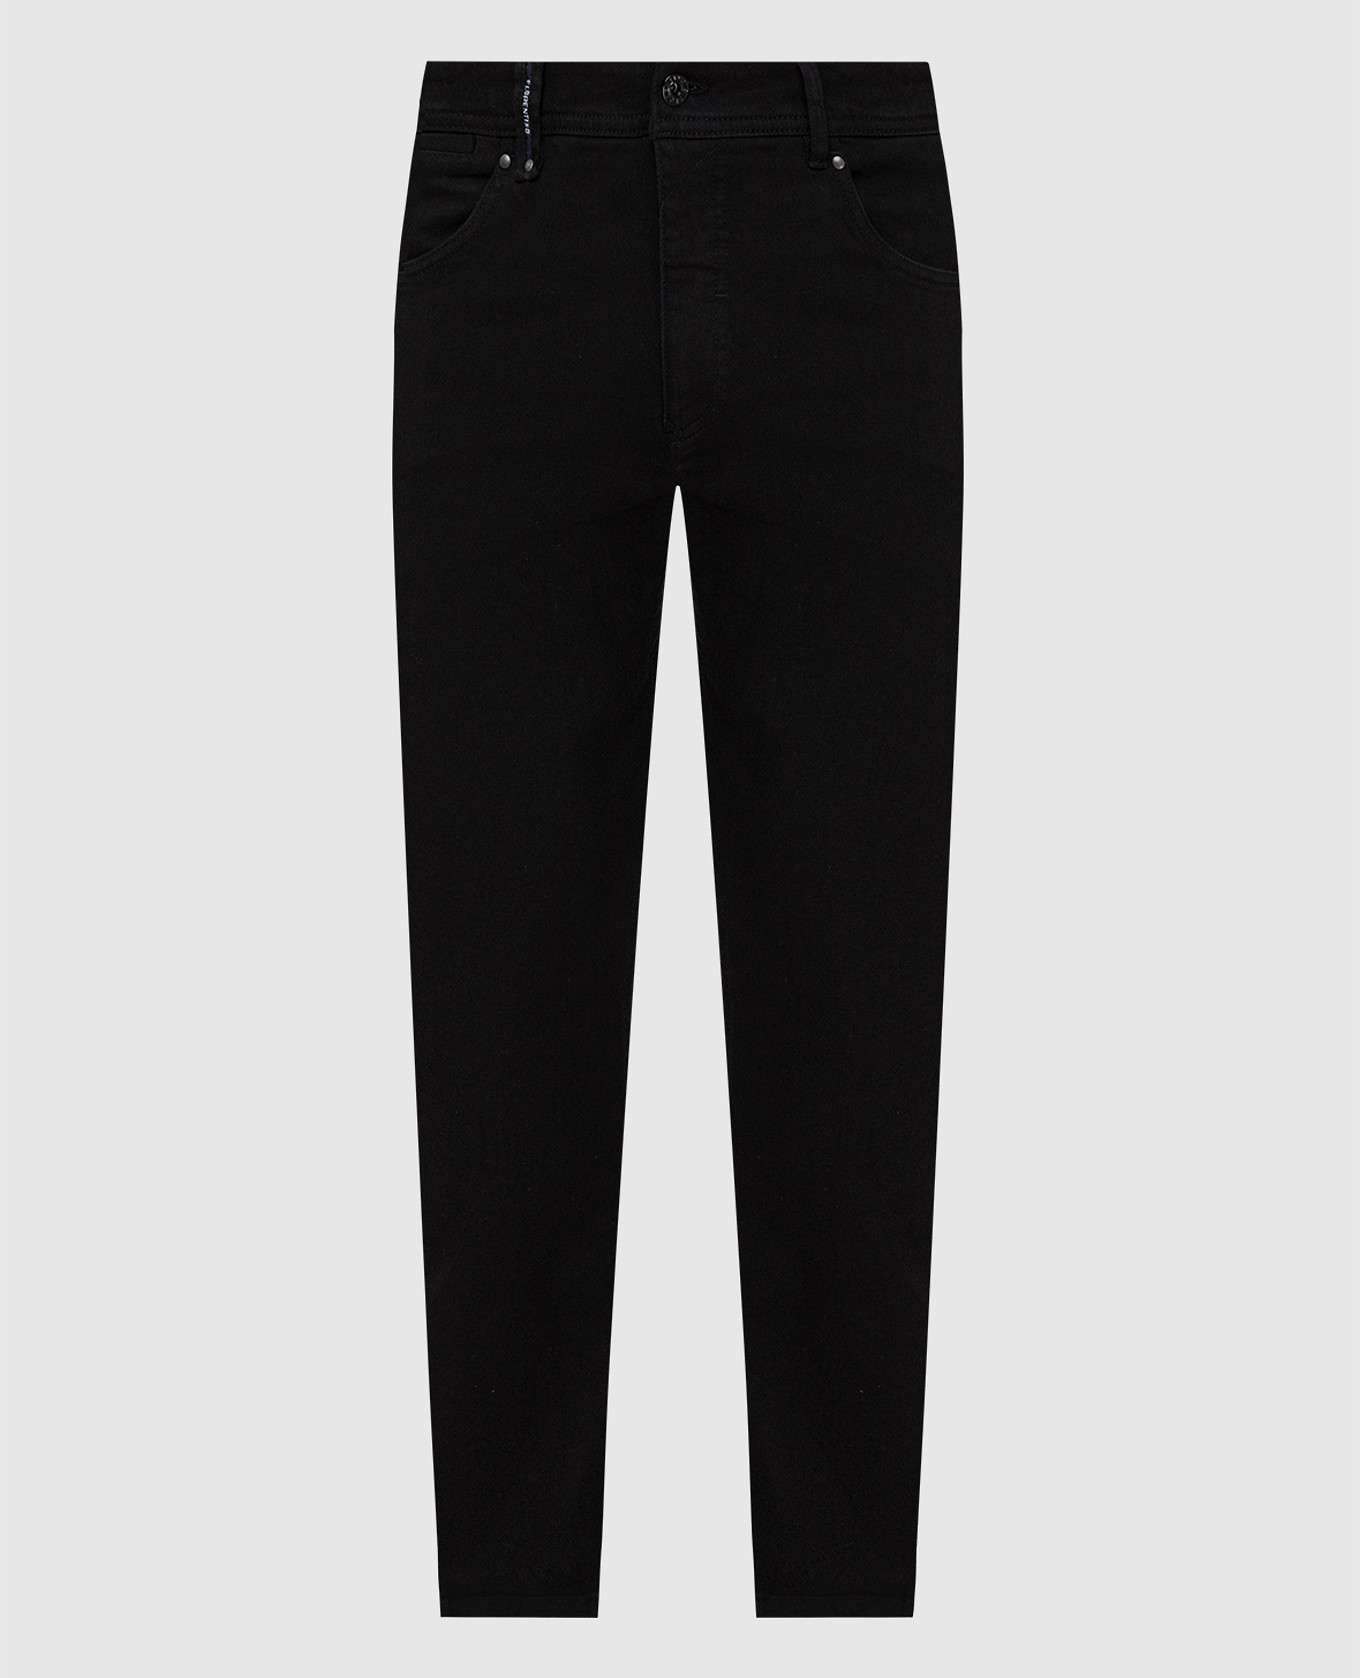 Florentino - Black jeans 220553020705 buy at Symbol